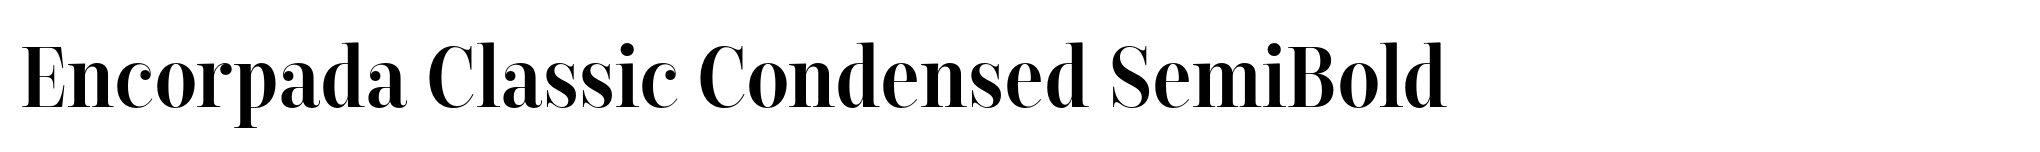 Encorpada Classic Condensed SemiBold image